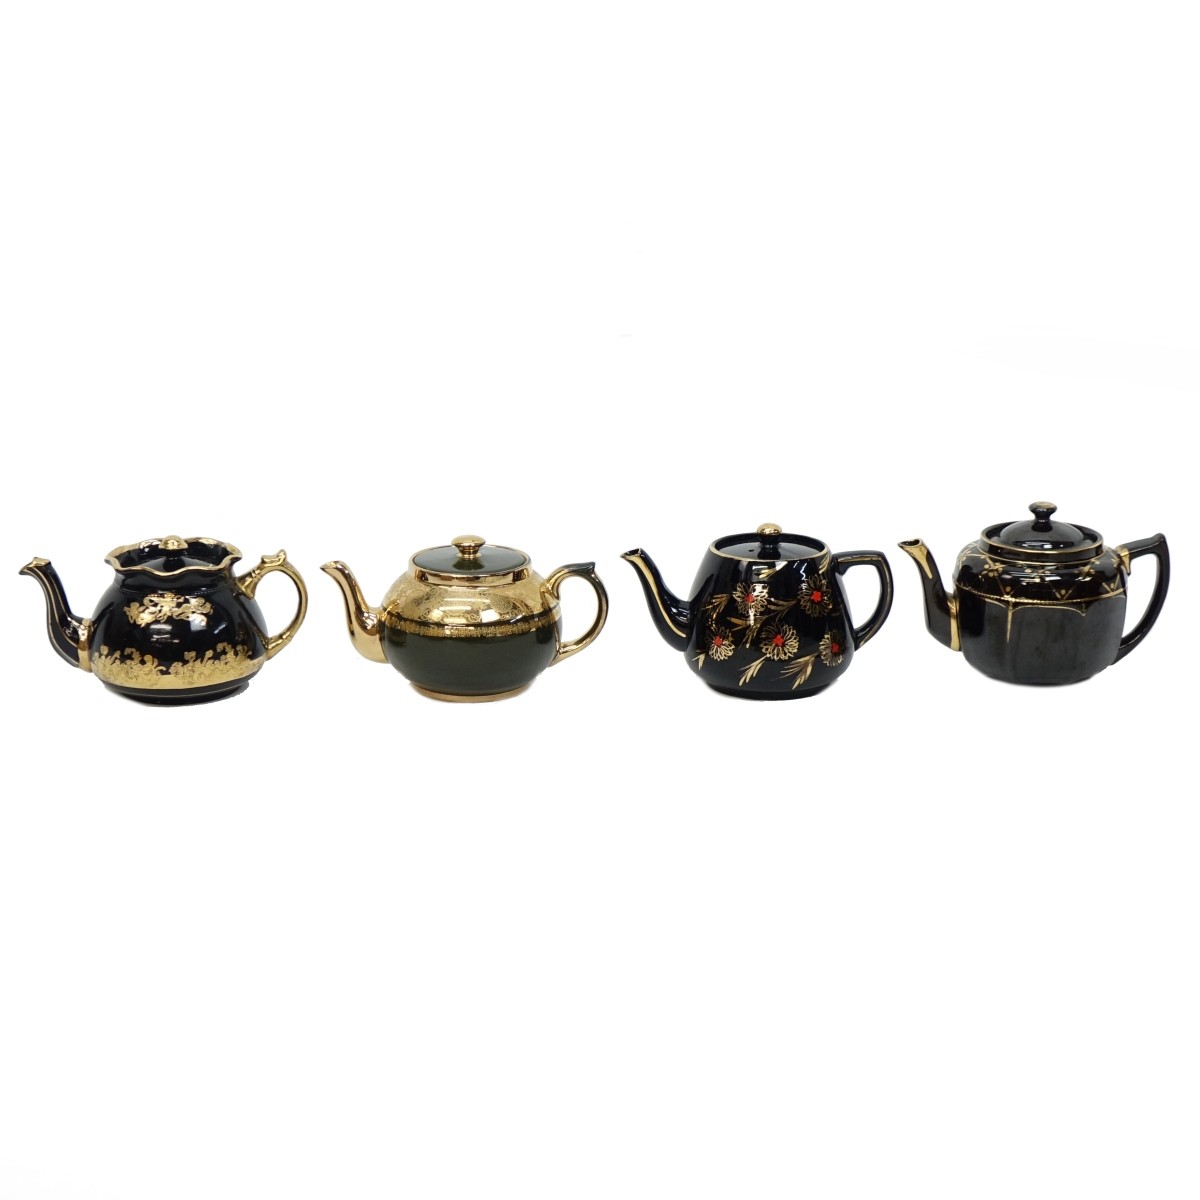 Four (4) Antique and Vintage Teapots